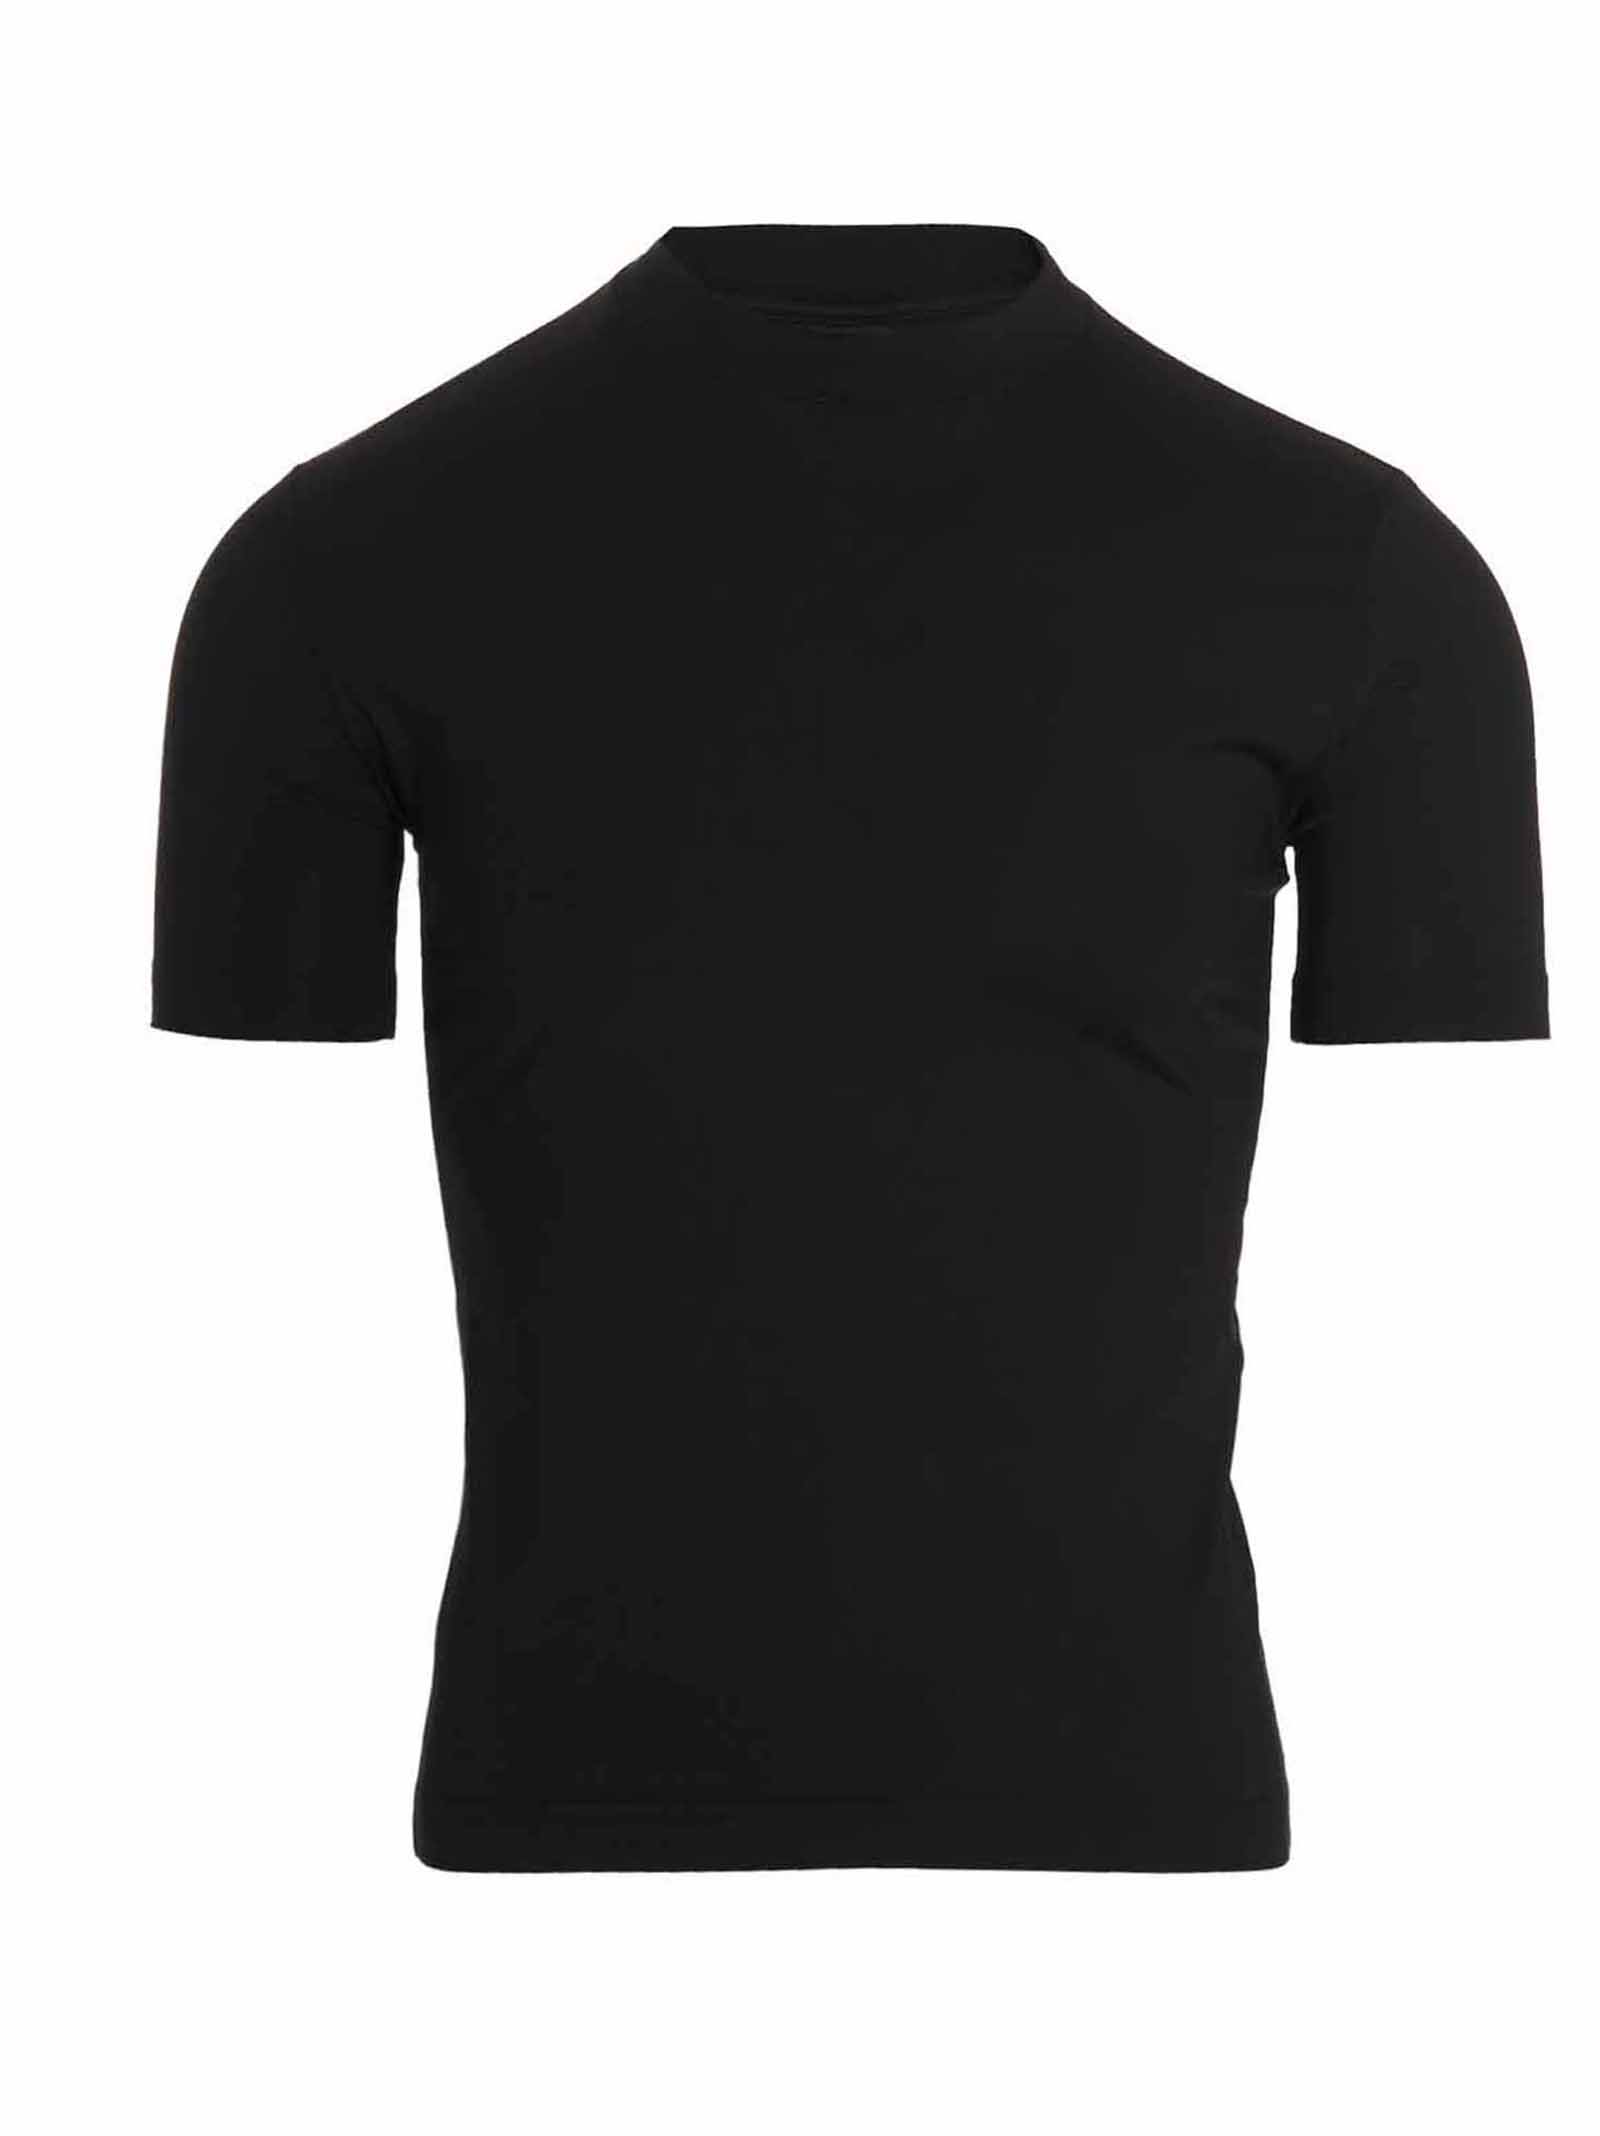 Balenciaga Super Tight T-shirt In Black | ModeSens